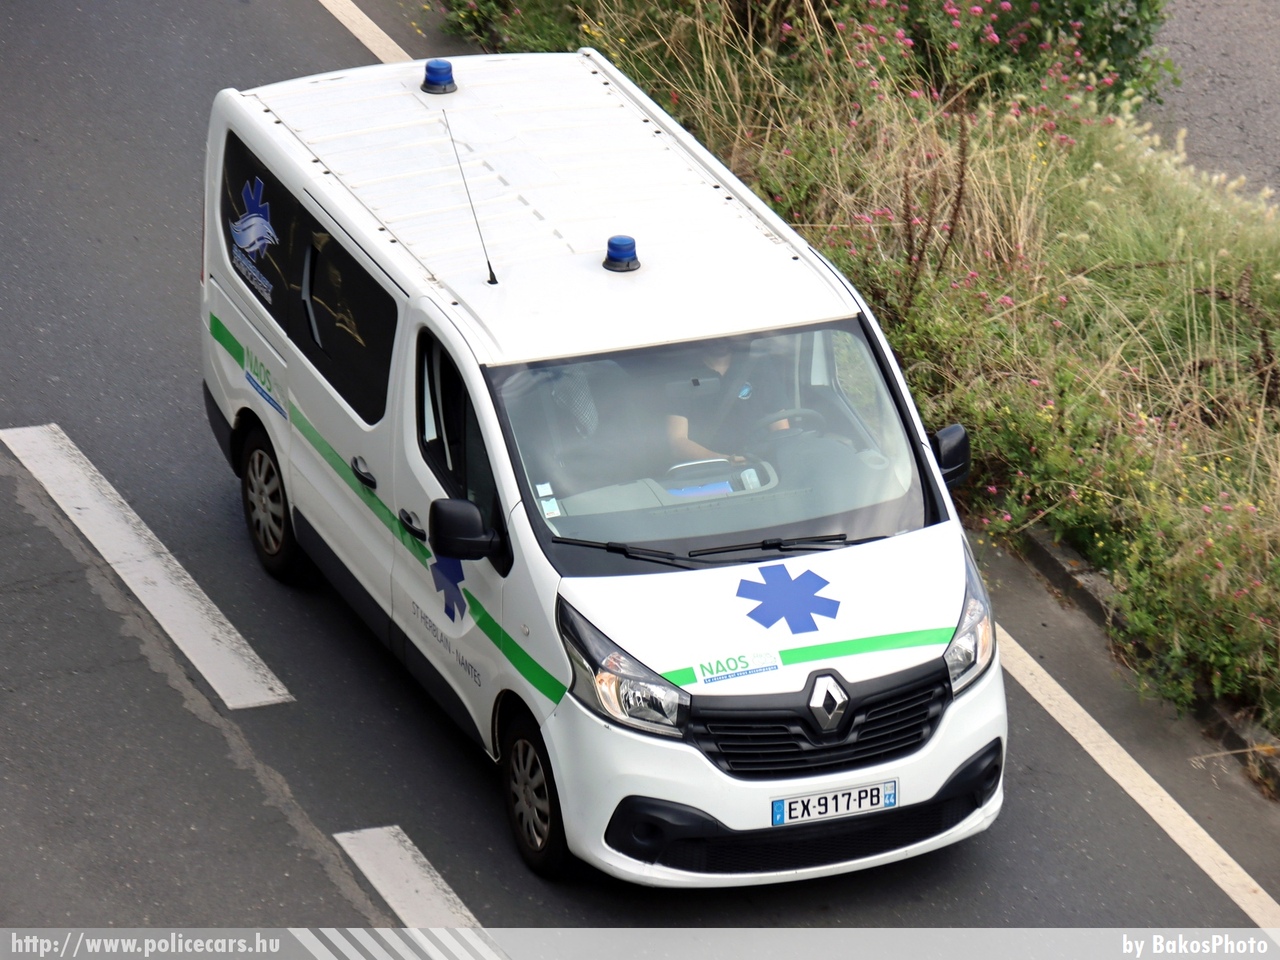 Renault Trafic, NAOS, Saint-Herblain Nantes, fotó: BakosPhoto
Keywords: mentő mentőautó francia Franciaország french France ambulance